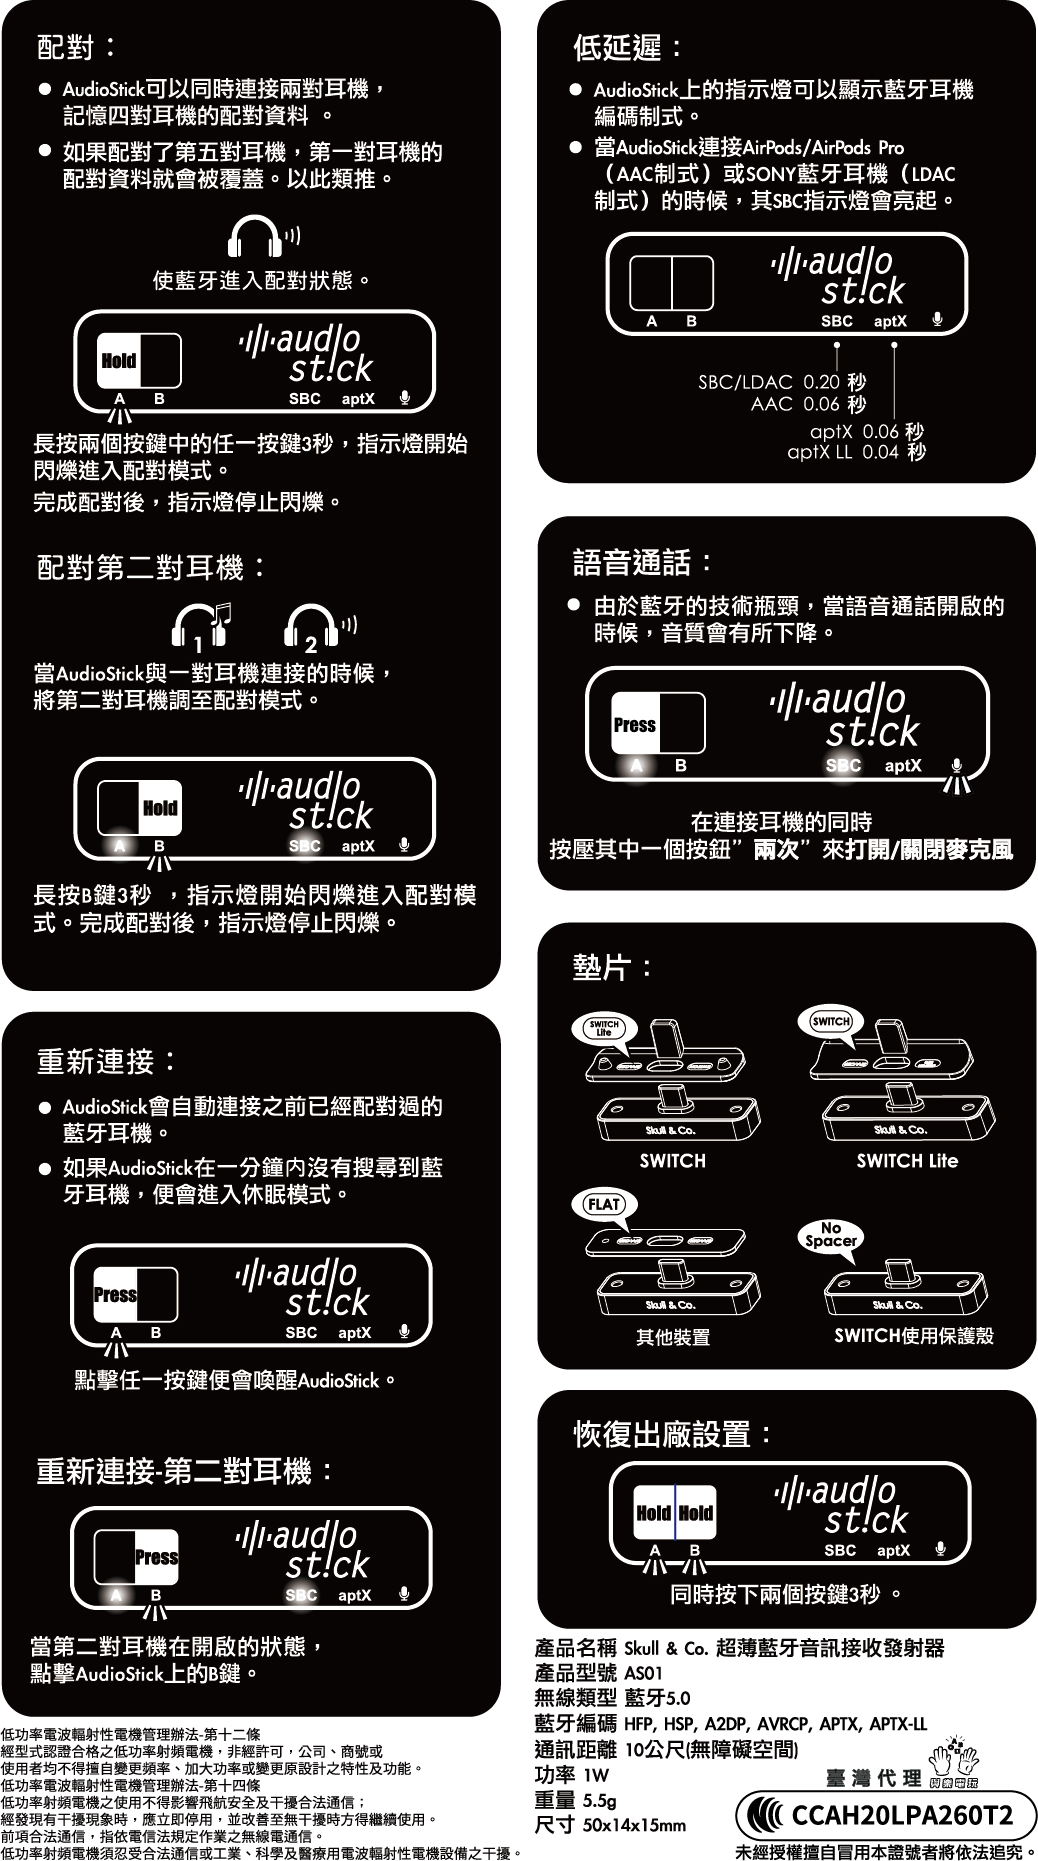 公開版中文使用說明書